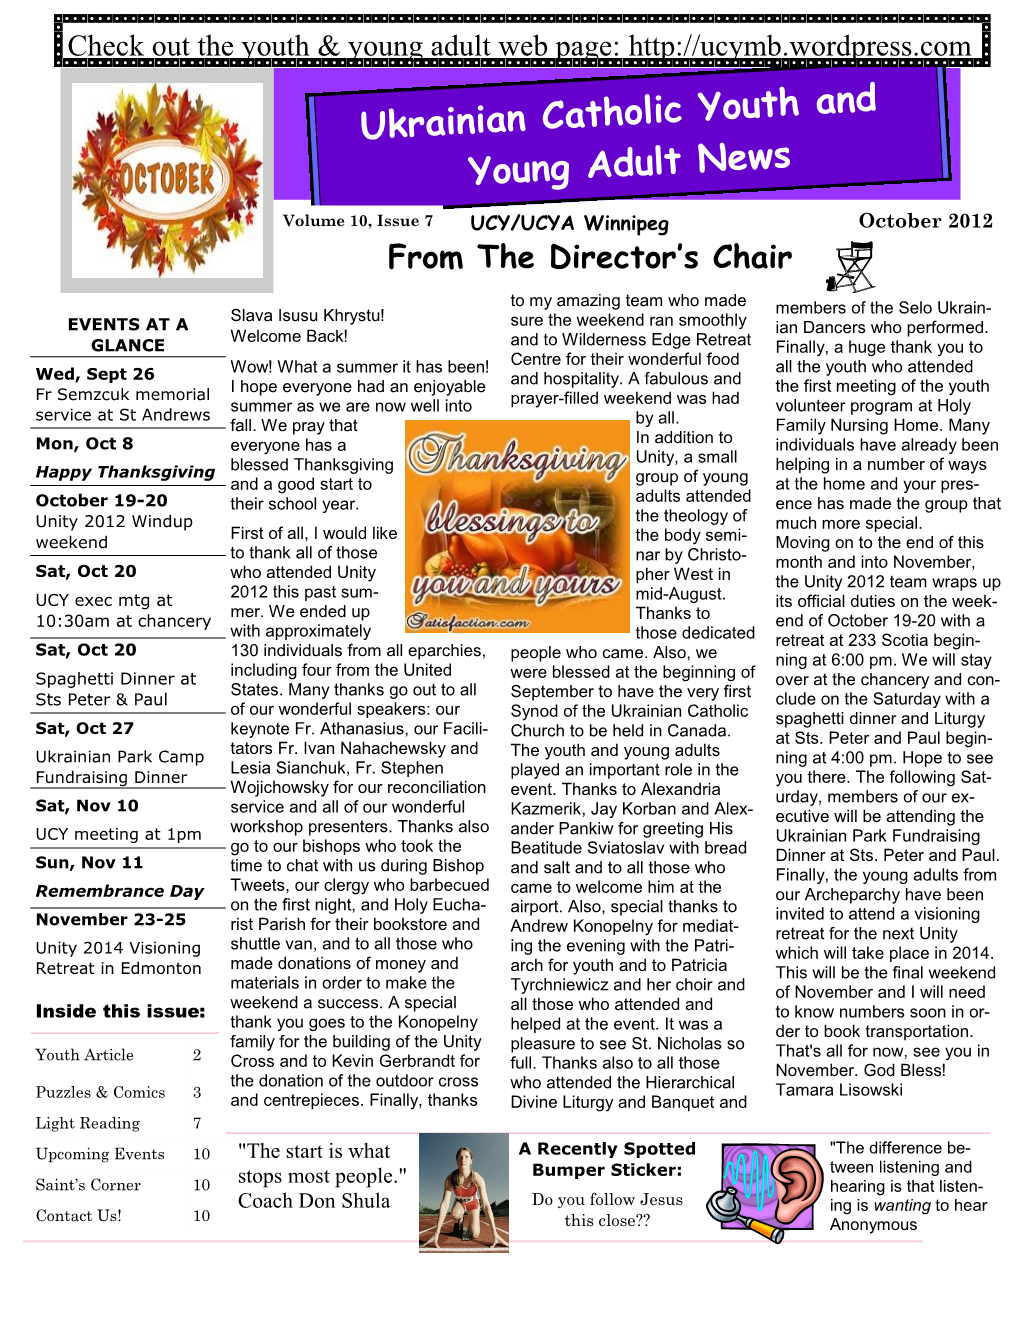 Ukrainian Catholic Youth & Young Adult Newsletter October 2012